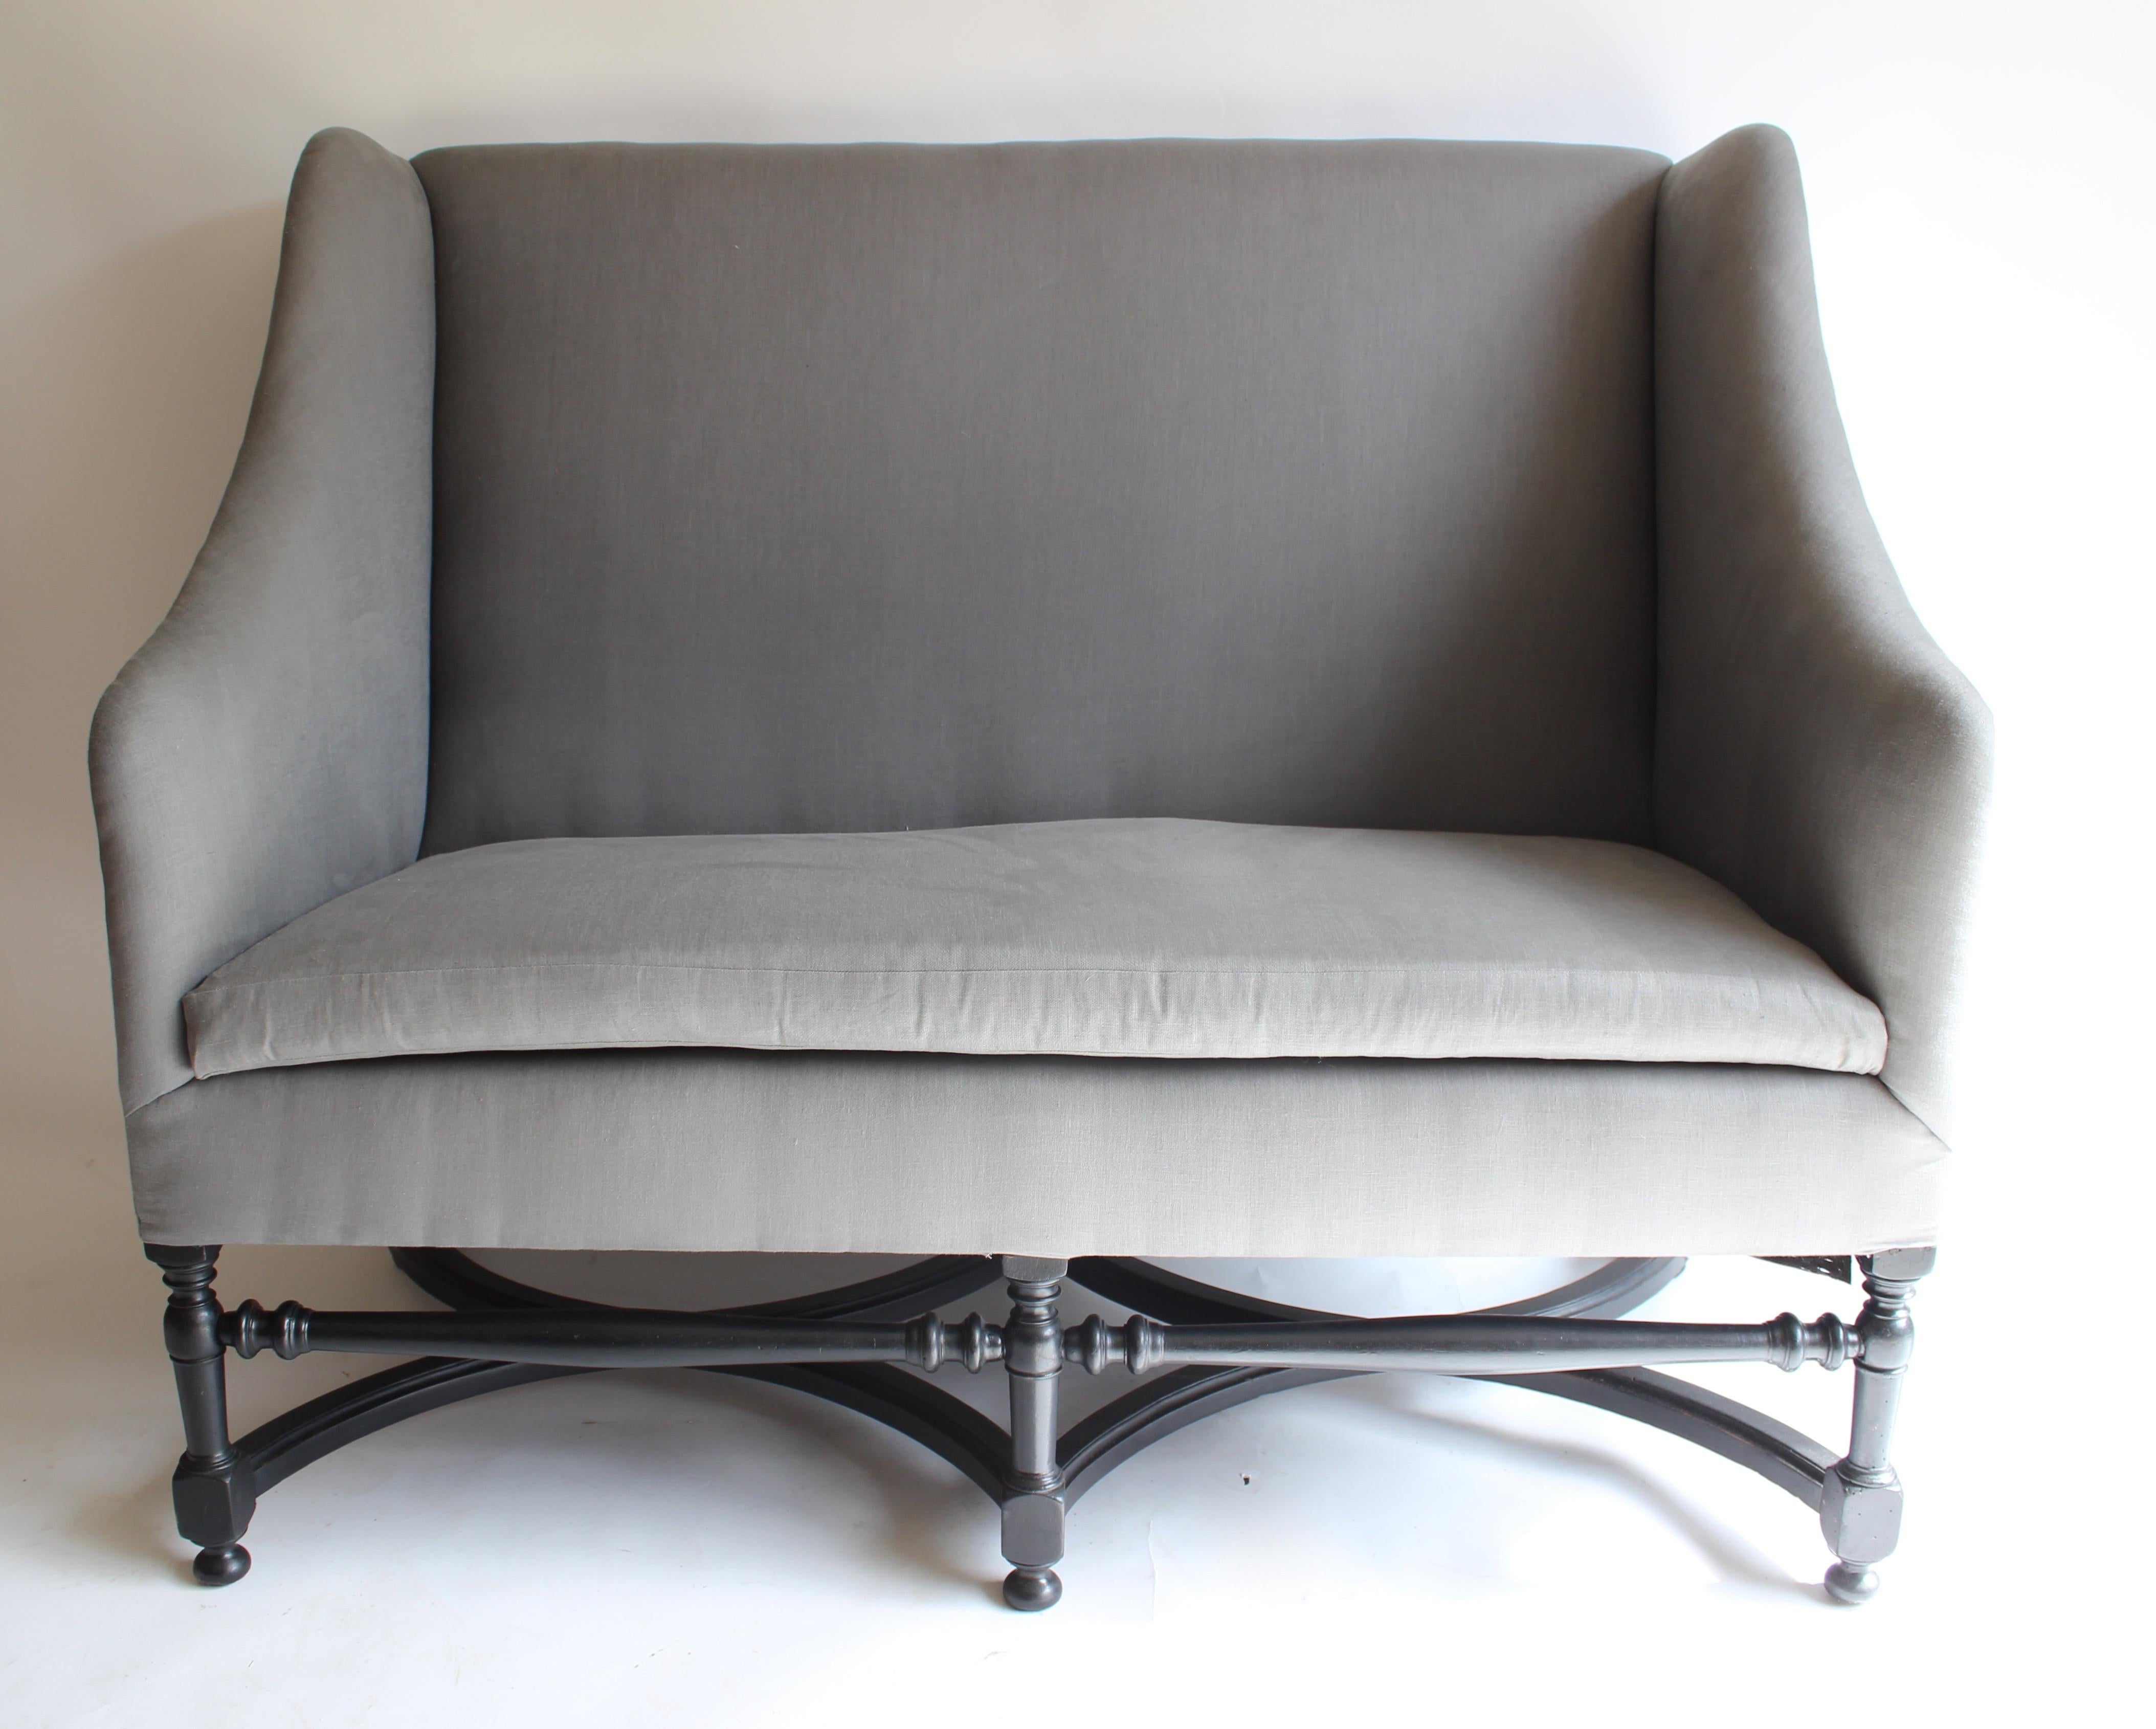 19th century French ebonized wood settee. Newly upholstered.